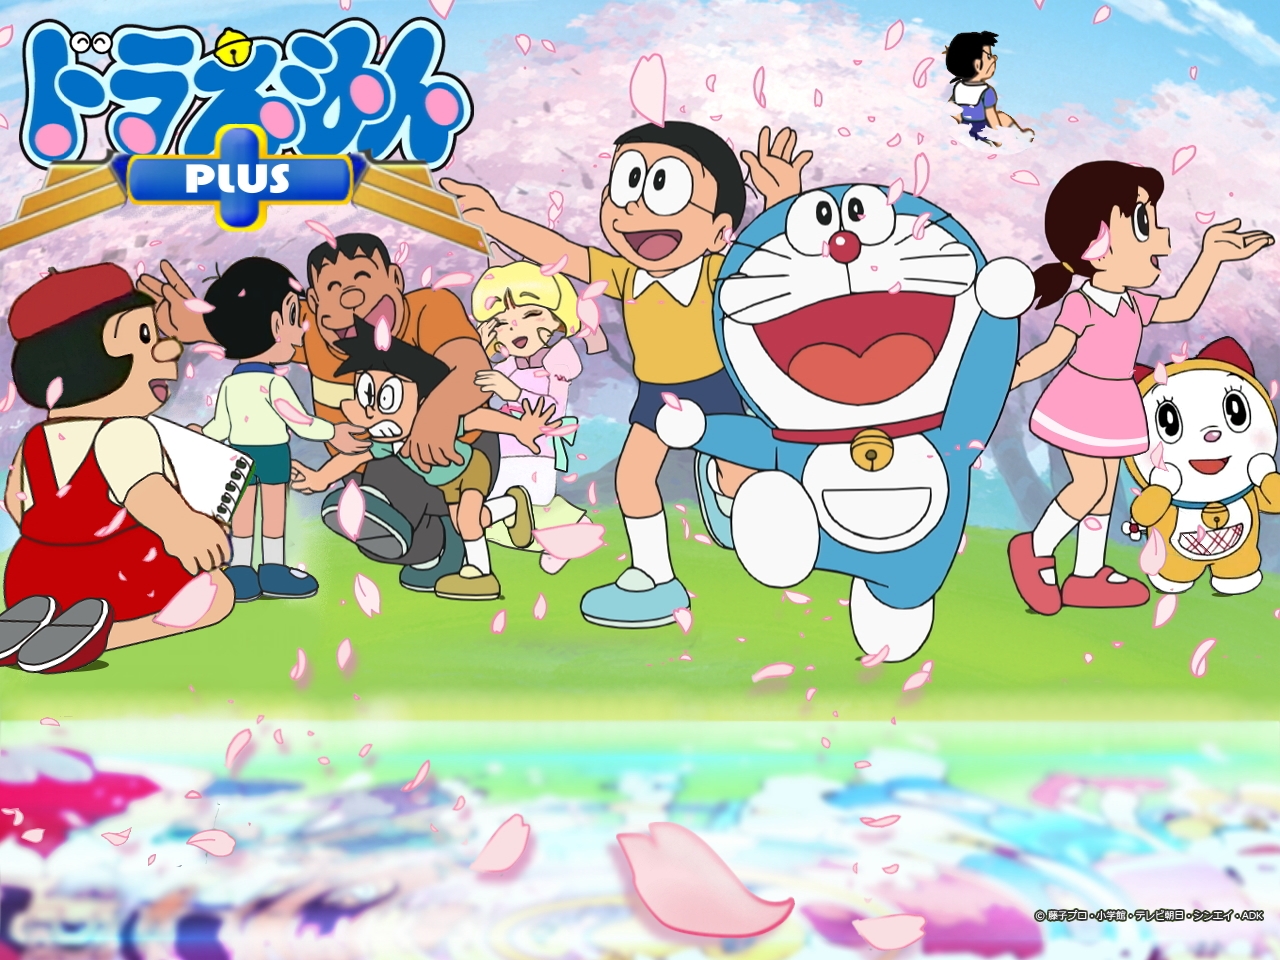 Anime Doraemon Wallpaper đang chờ đón bạn trên màn hình của mình. Những hình ảnh tuyệt đẹp về Doraemon và các bạn sẽ mang đến cho bạn những giây phút tuyệt vời cùng những kỷ niệm đáng nhớ. Nhấn play ngay để tận hưởng màn hình của mình.